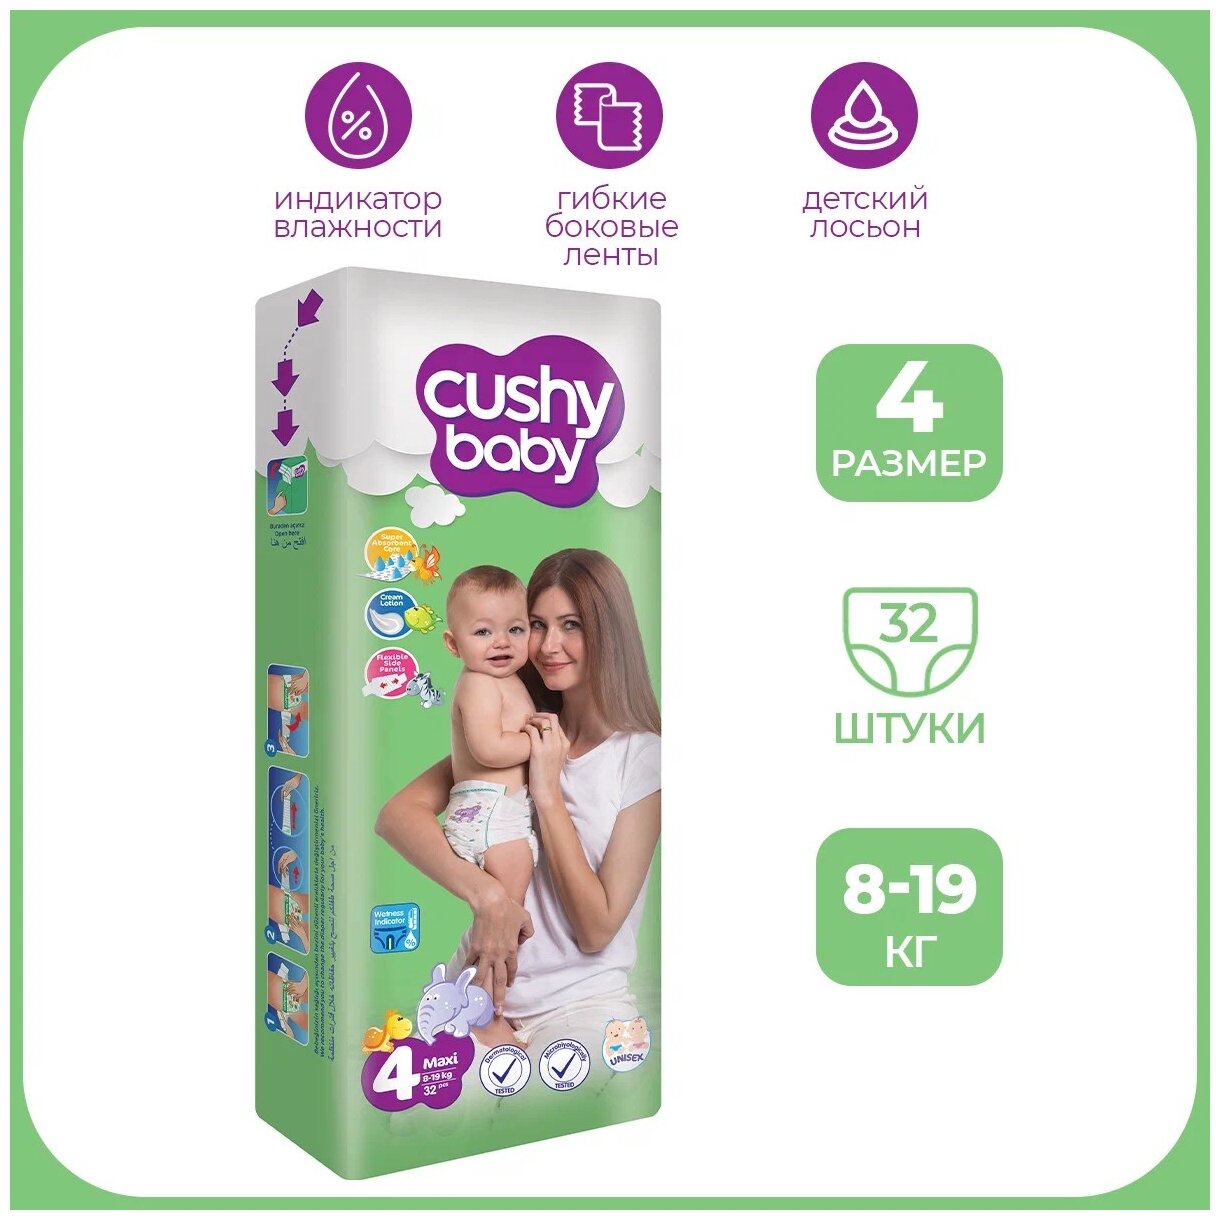 Подгузники 4 размер CUSHY BABY ночные для детей весом 8-19 кг, маленькая пачка 32 шт.